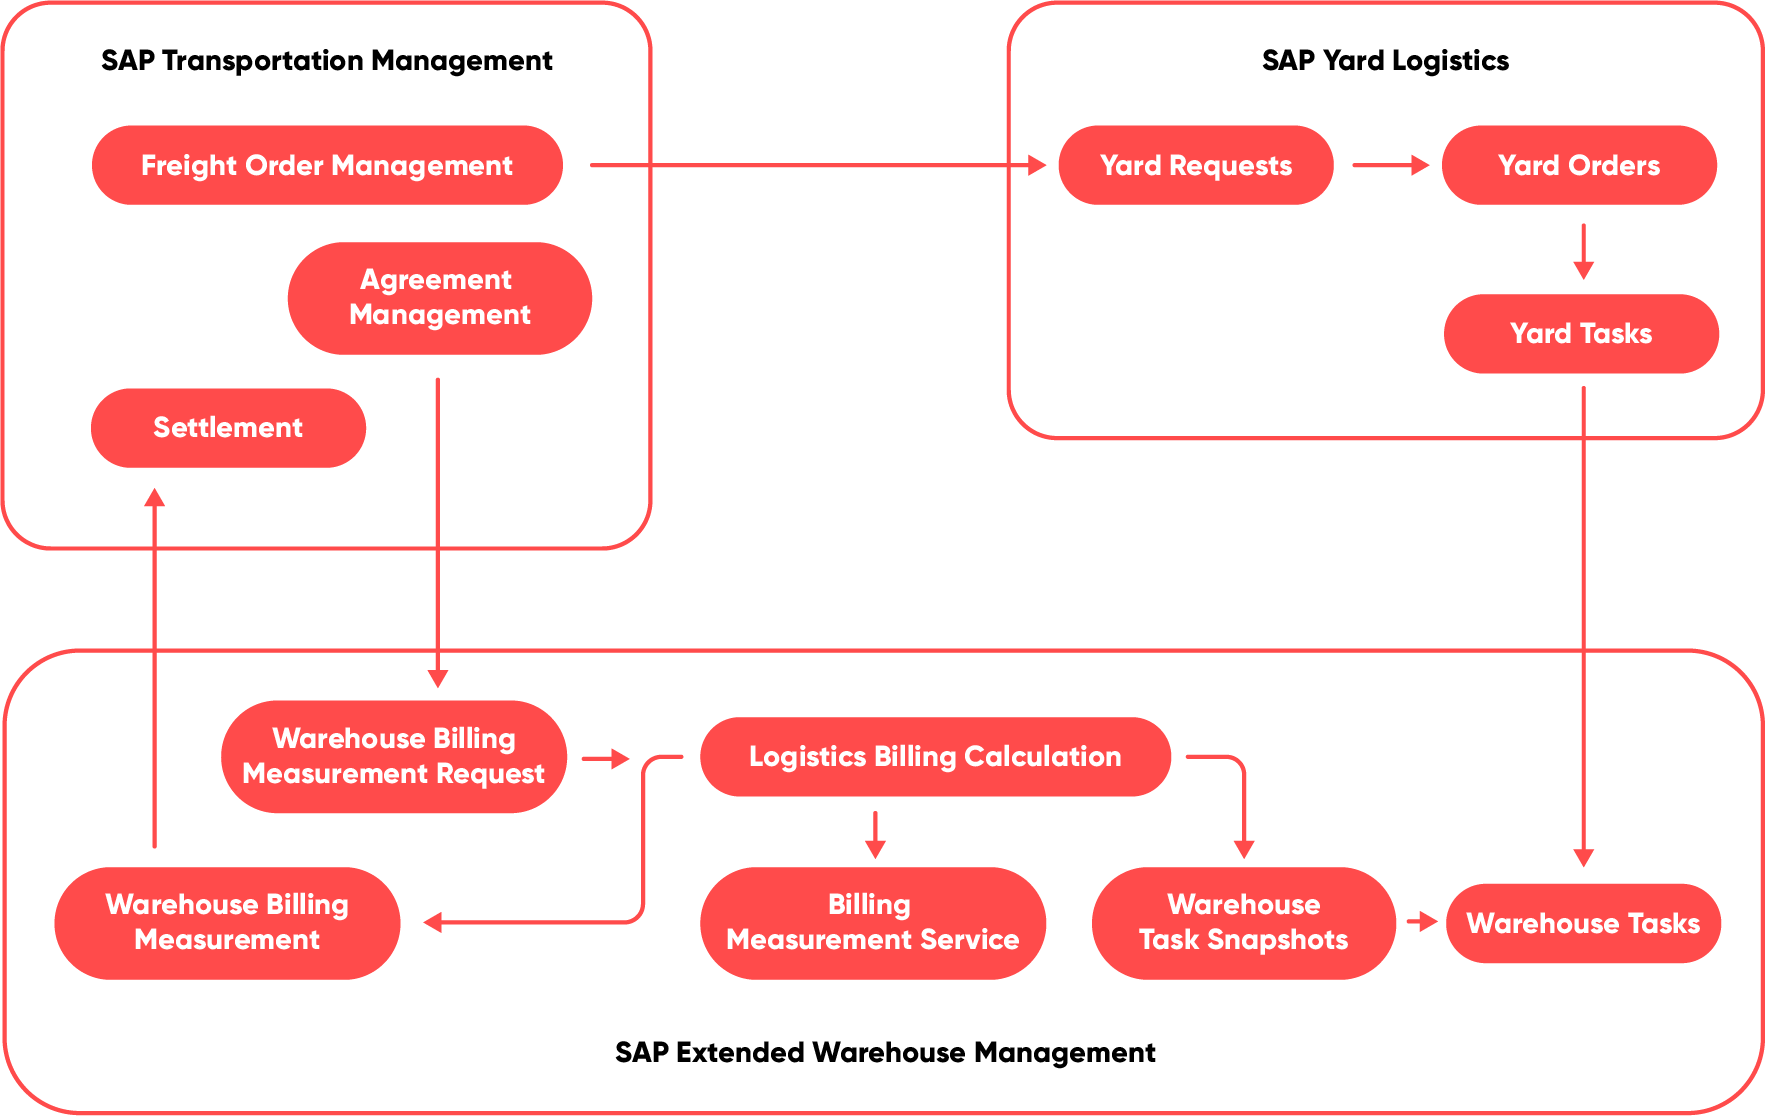 Warehouse Billing mit SAP Yard Logistics